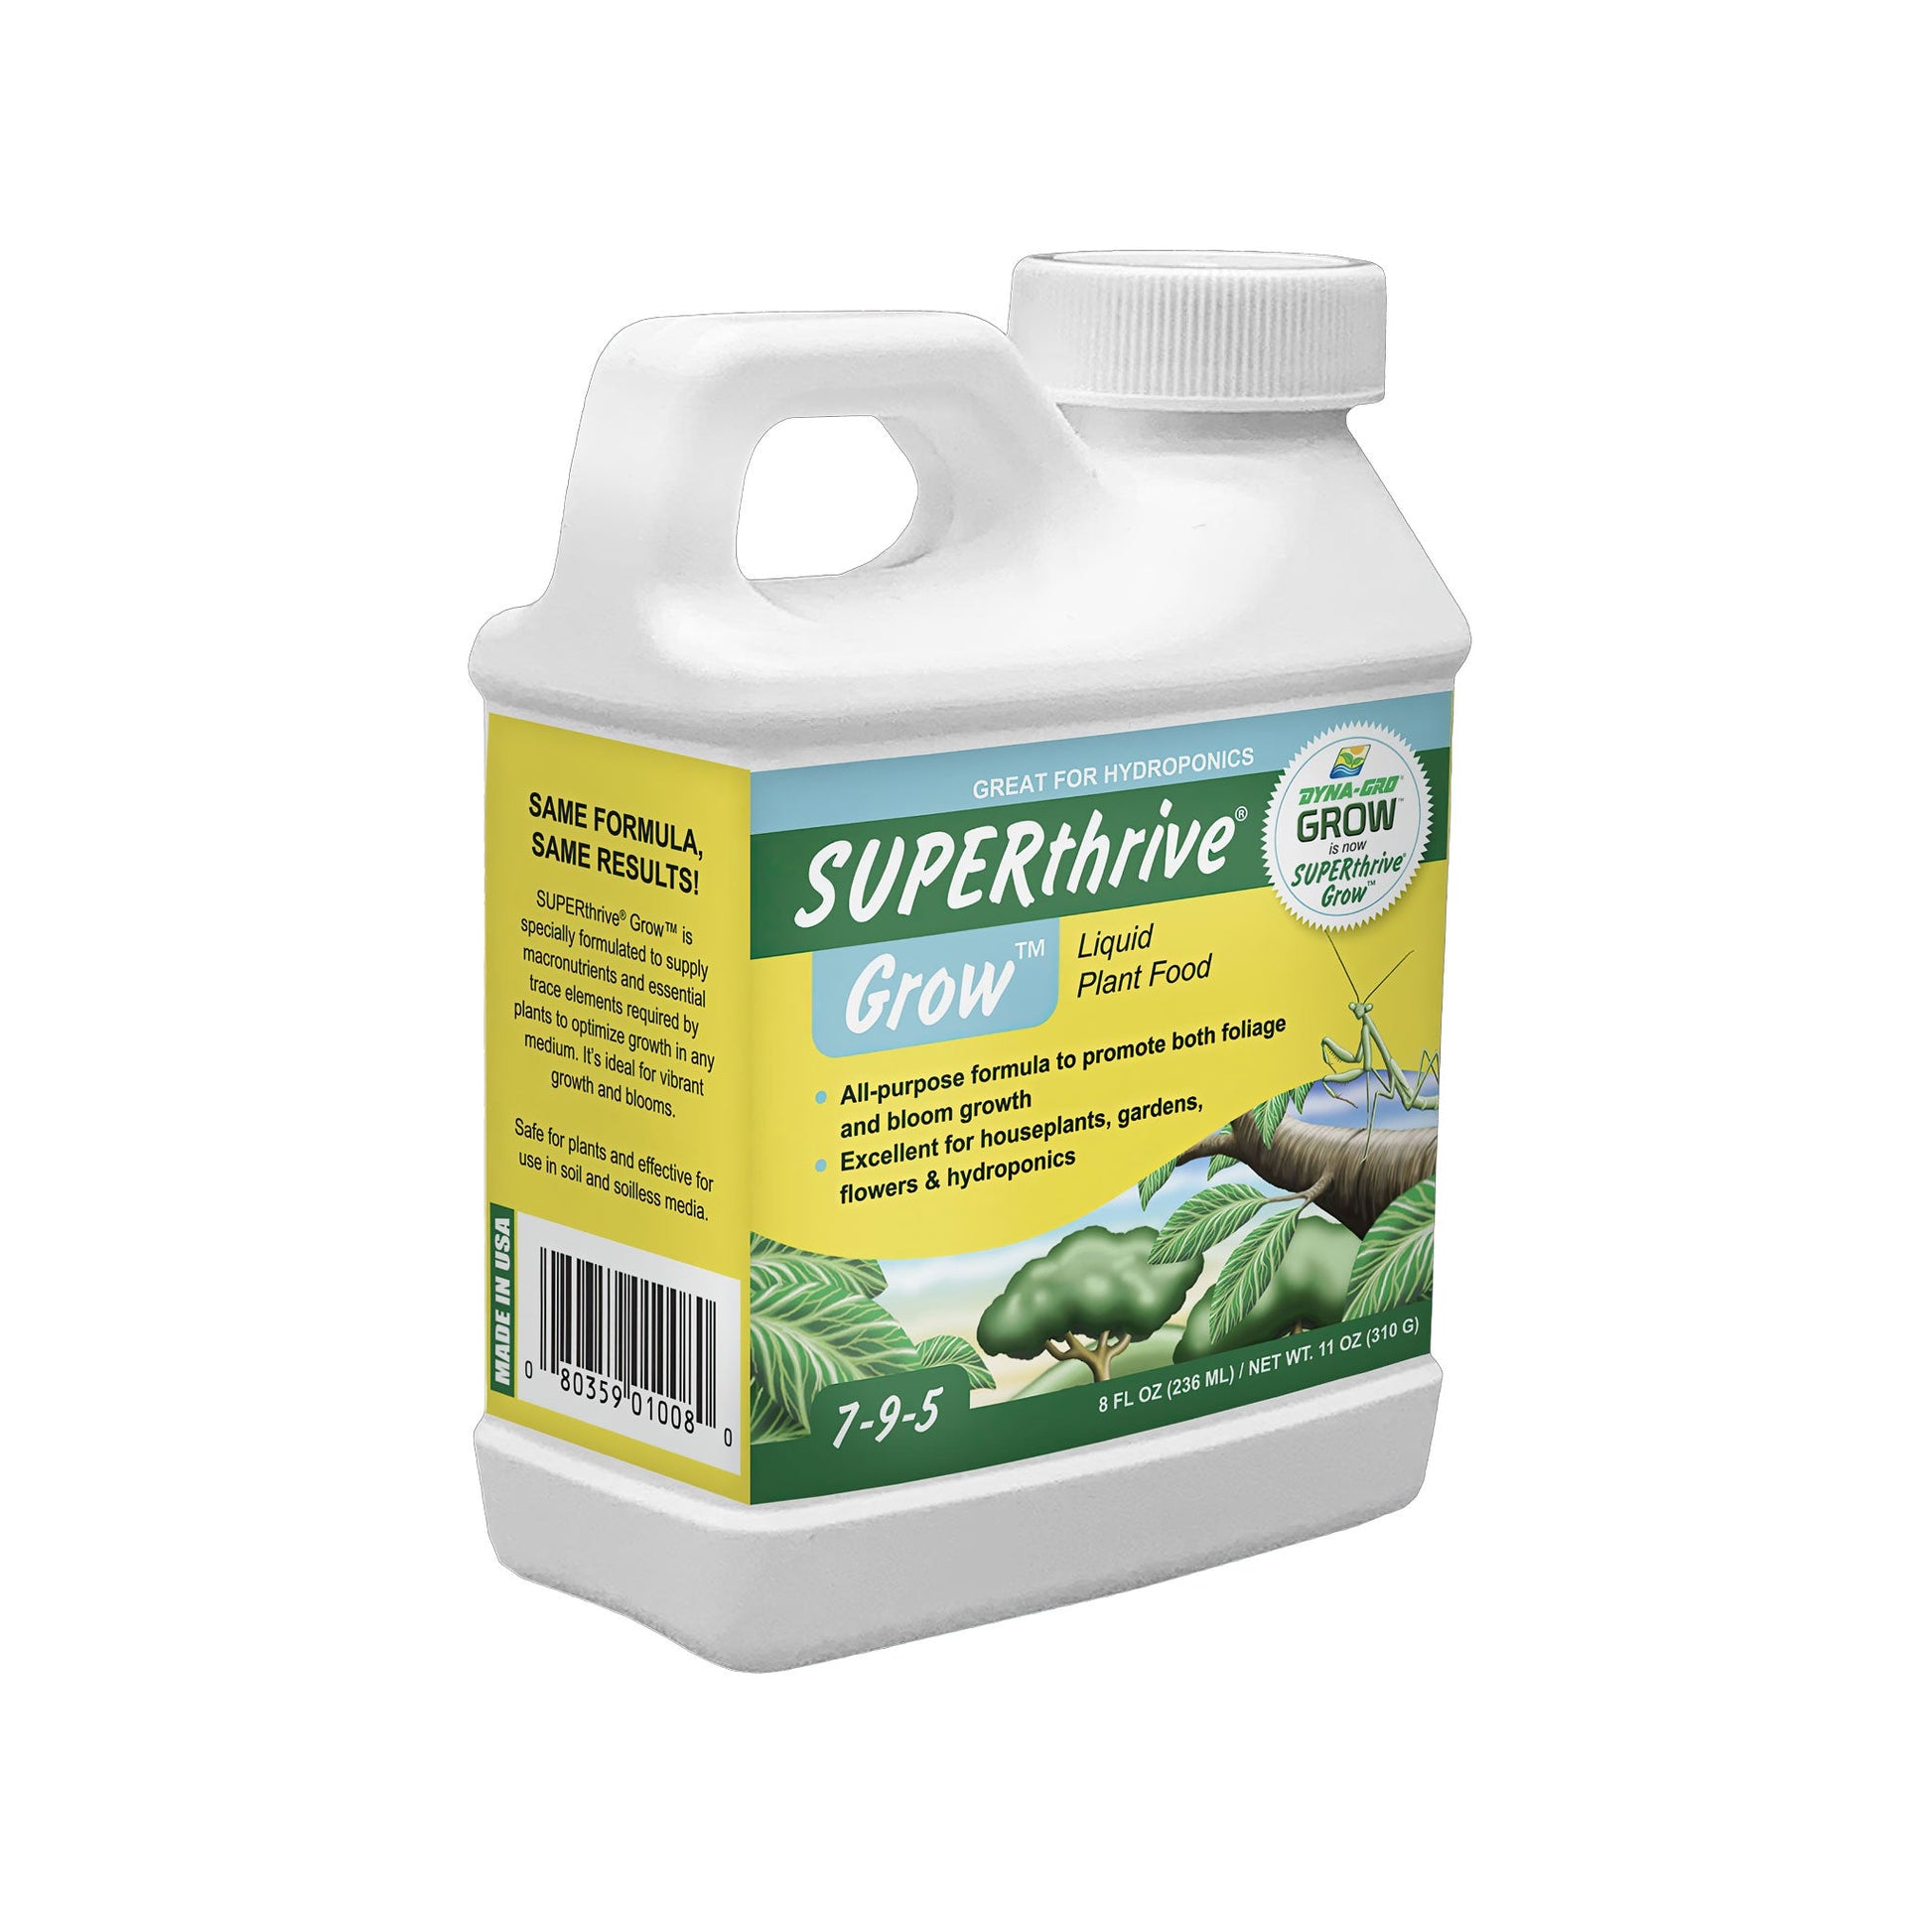 SUPERthrive Grow 7-9-5 - Fertiliser